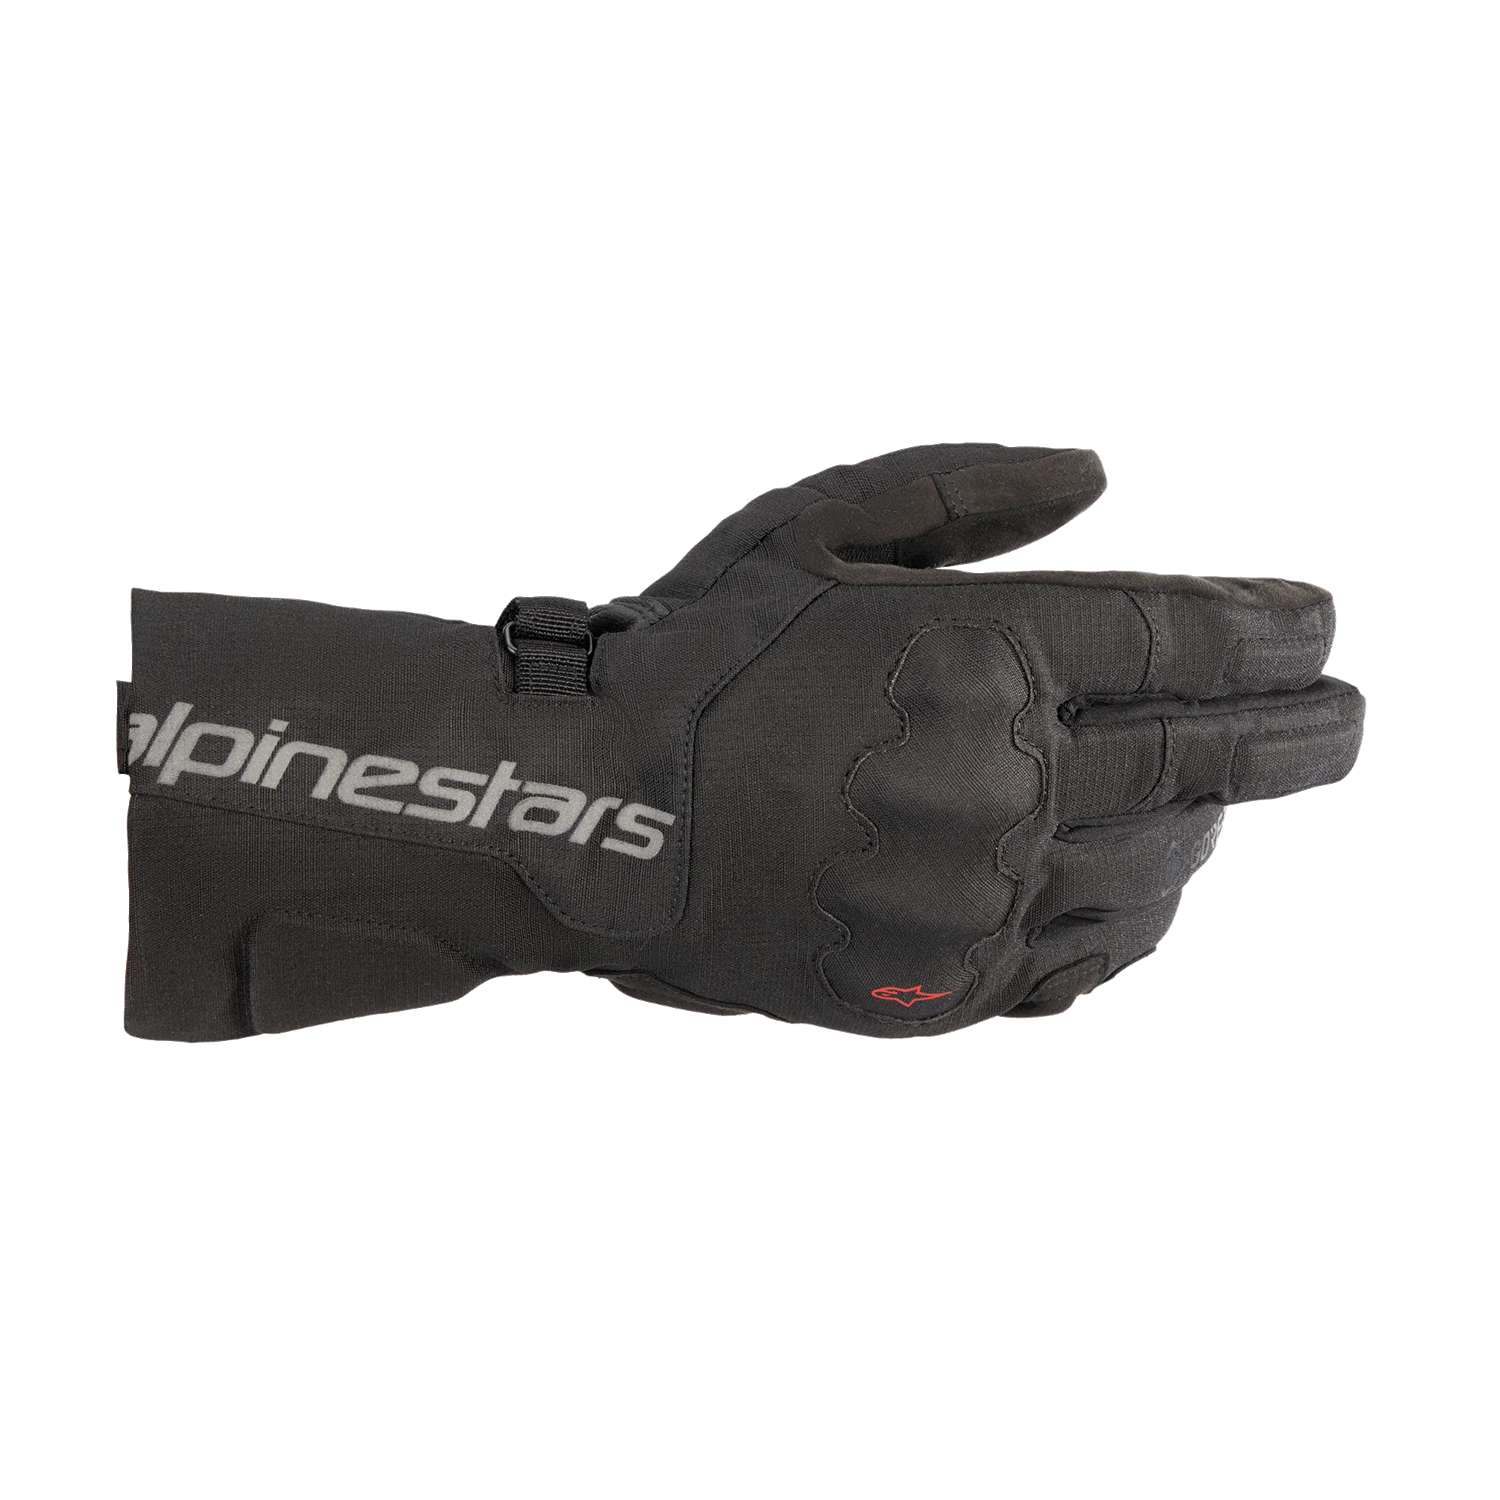 Image of Alpinestars Wr-X Gore-Tex Gloves Black Talla XL